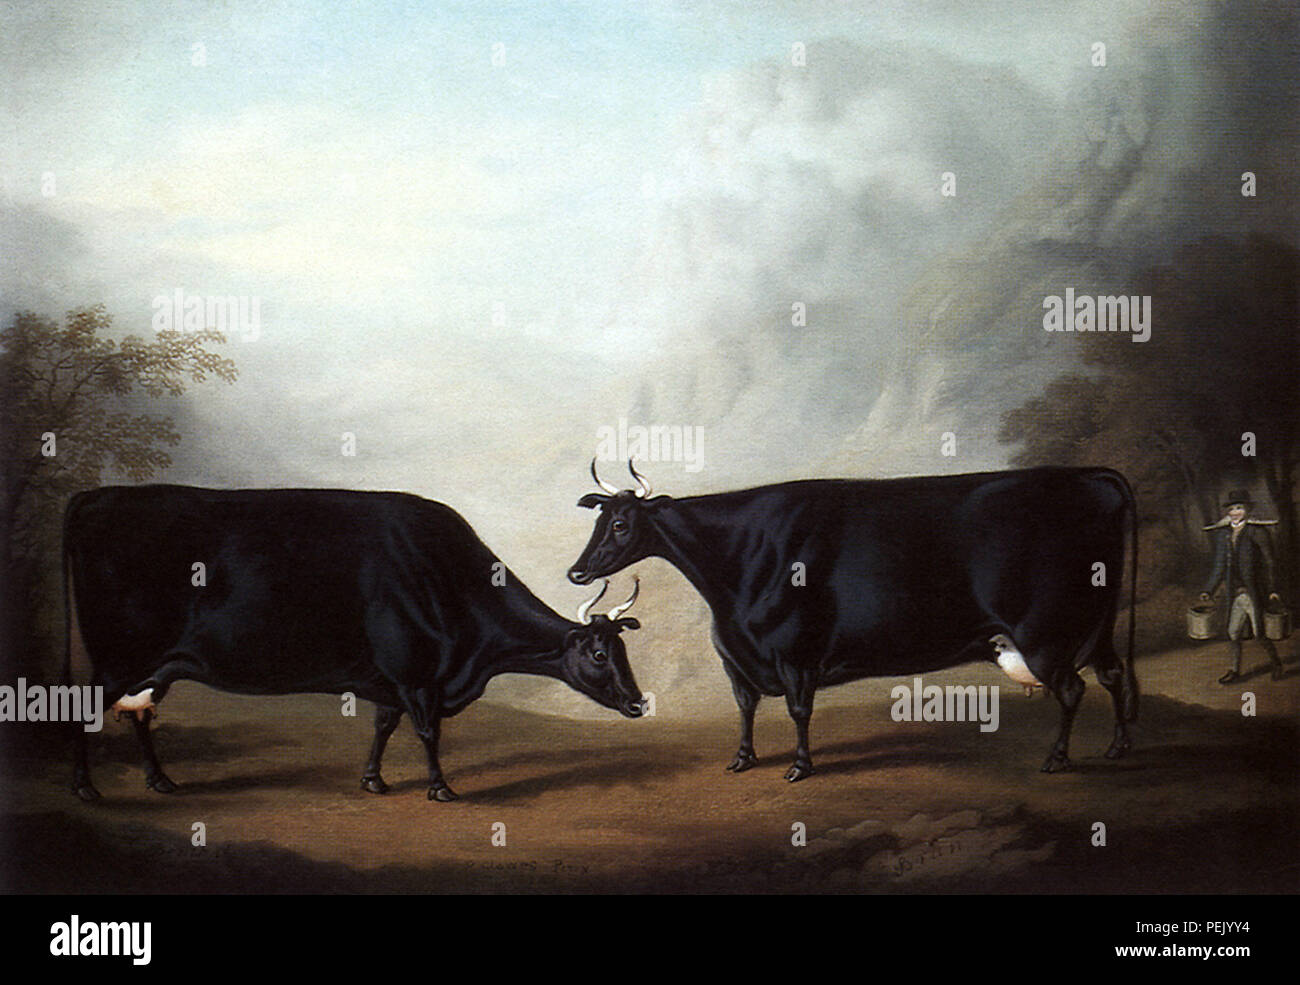 Welsh Black Cows, Clowes, Daniel Stock Photo